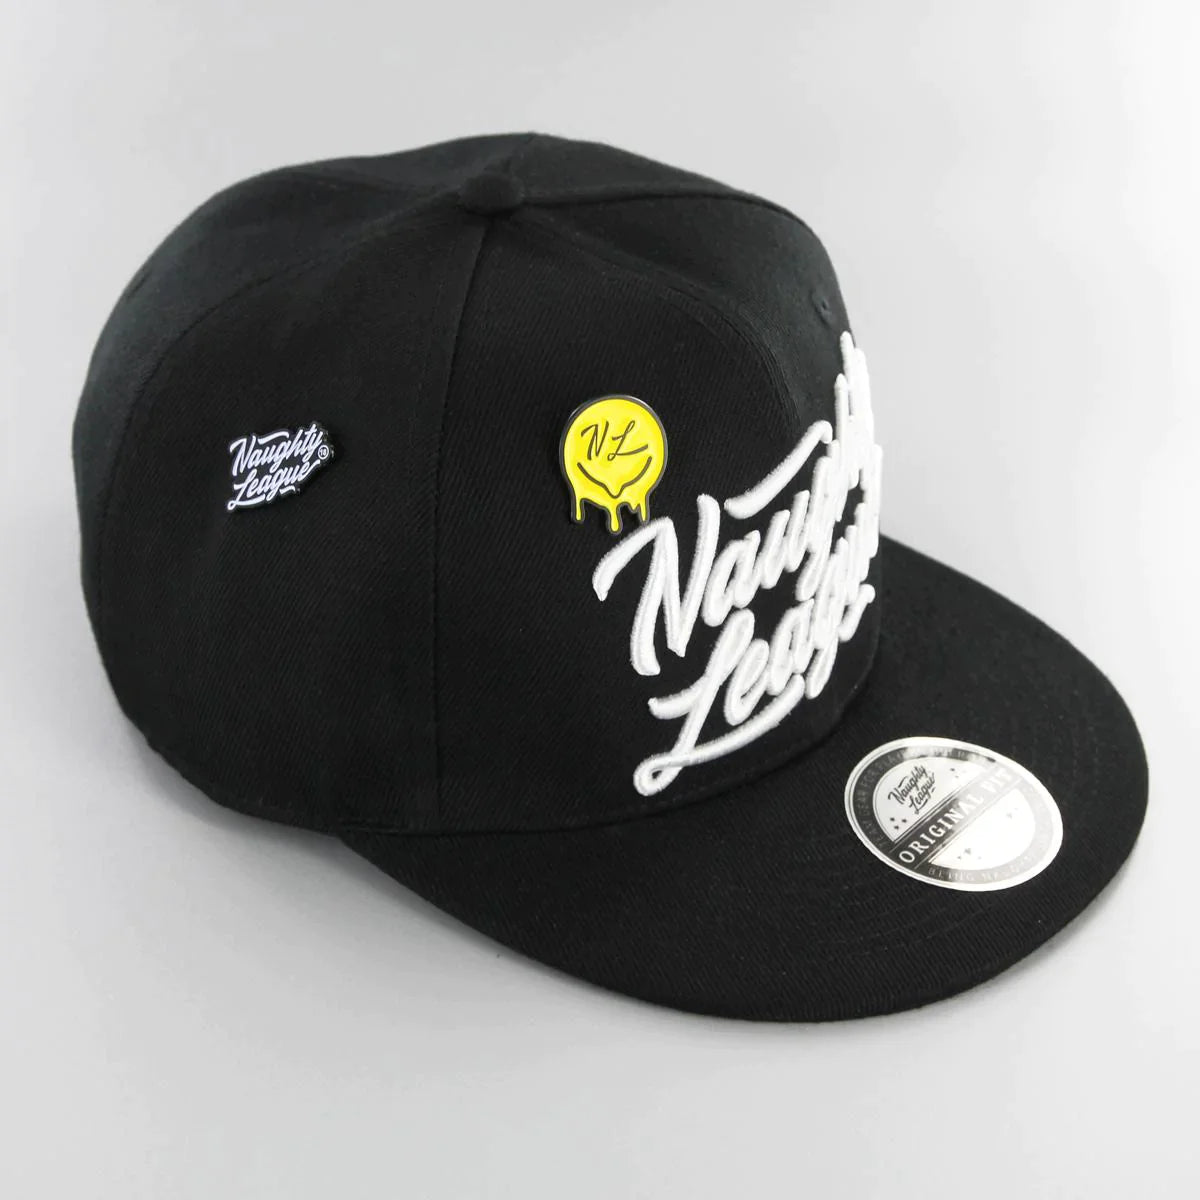 Branded Snapback Cap Black/White